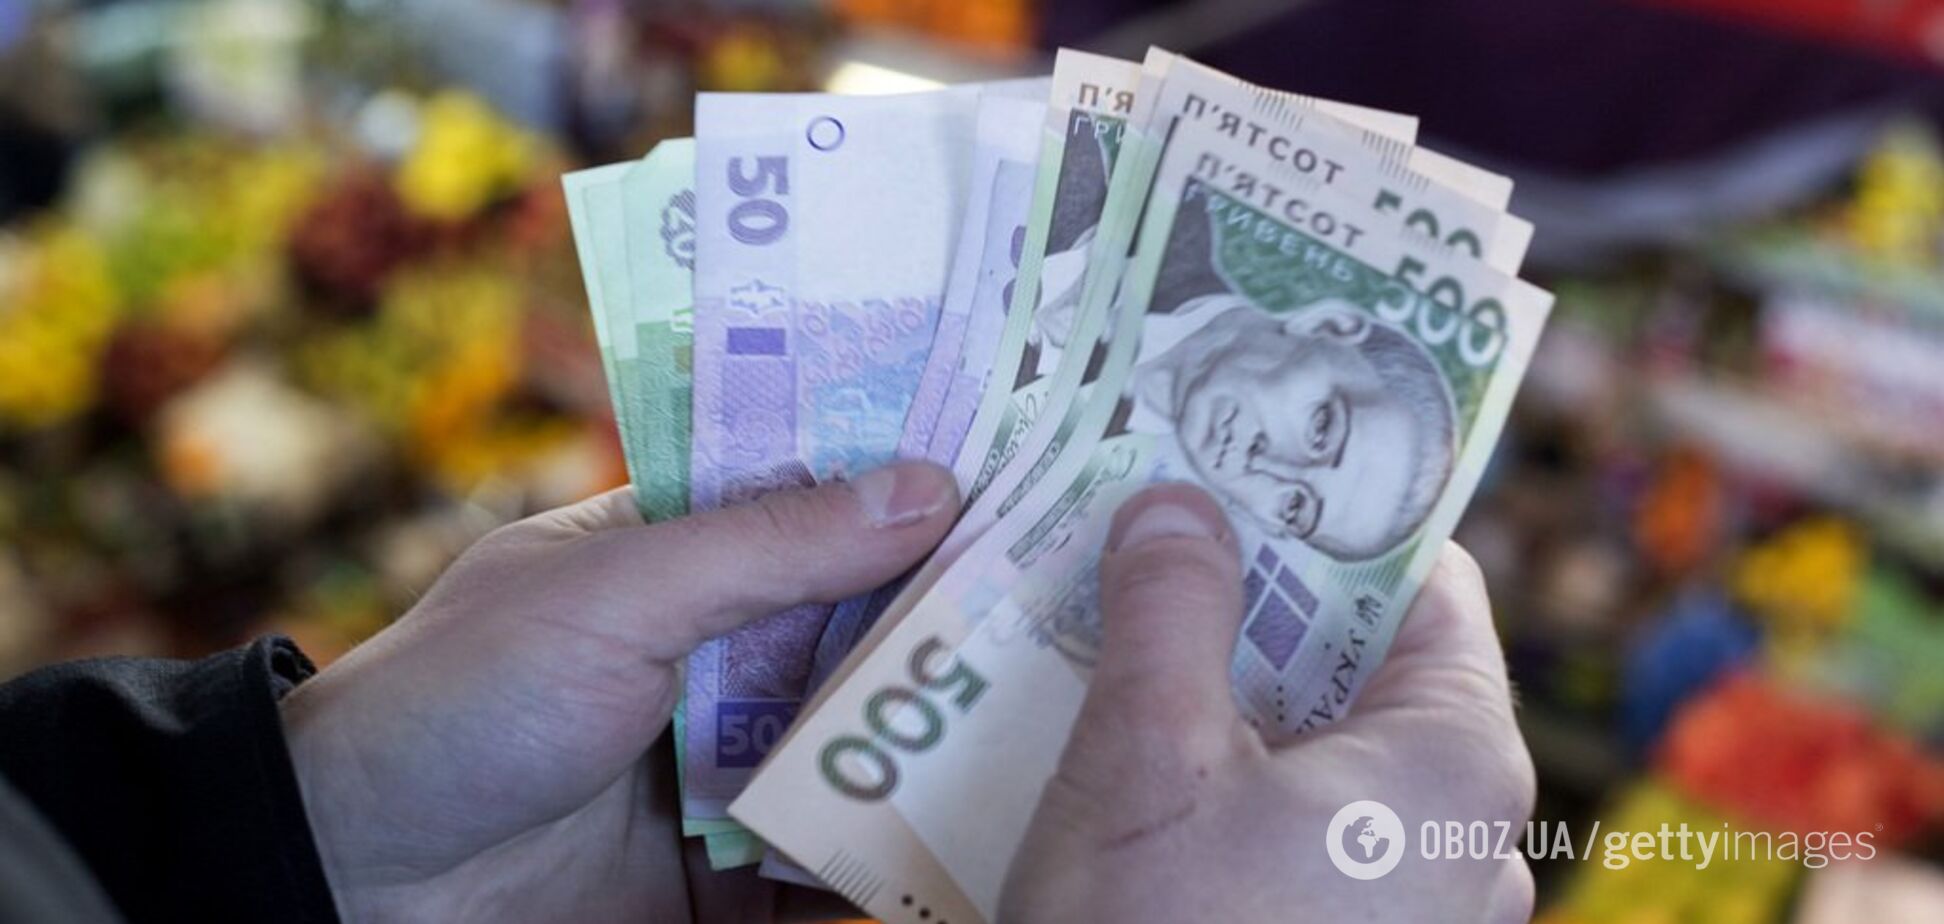 Половина доходов проедается: на что тратят зарплату украинцы